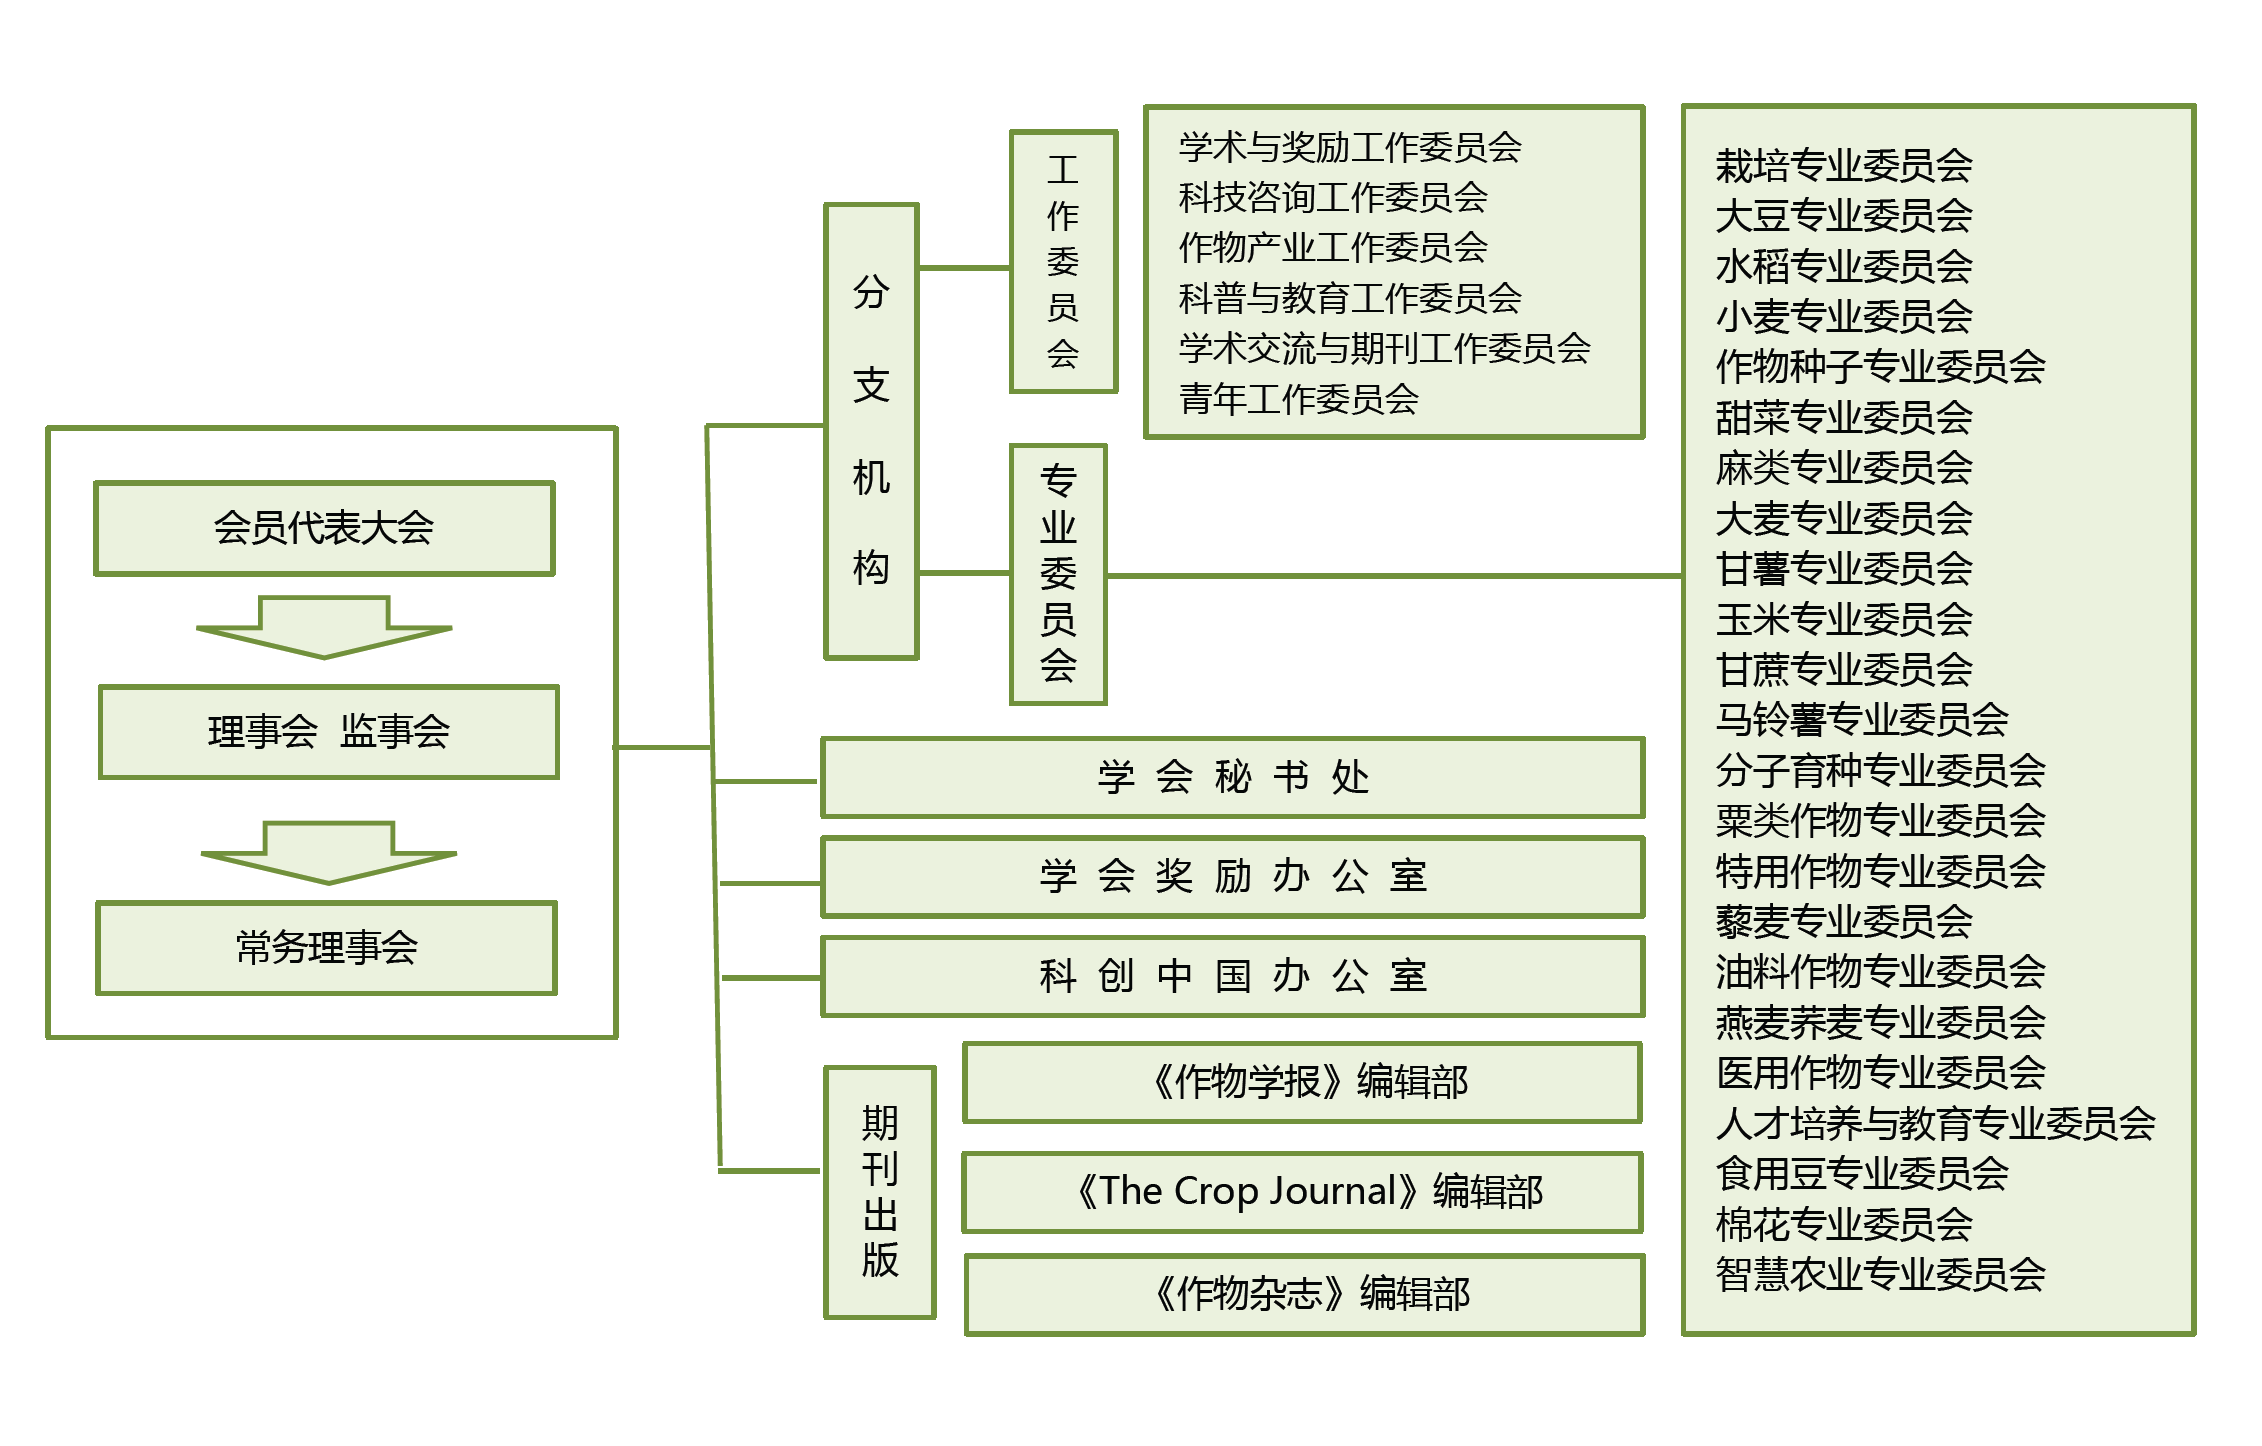 组织结构图-中文.png